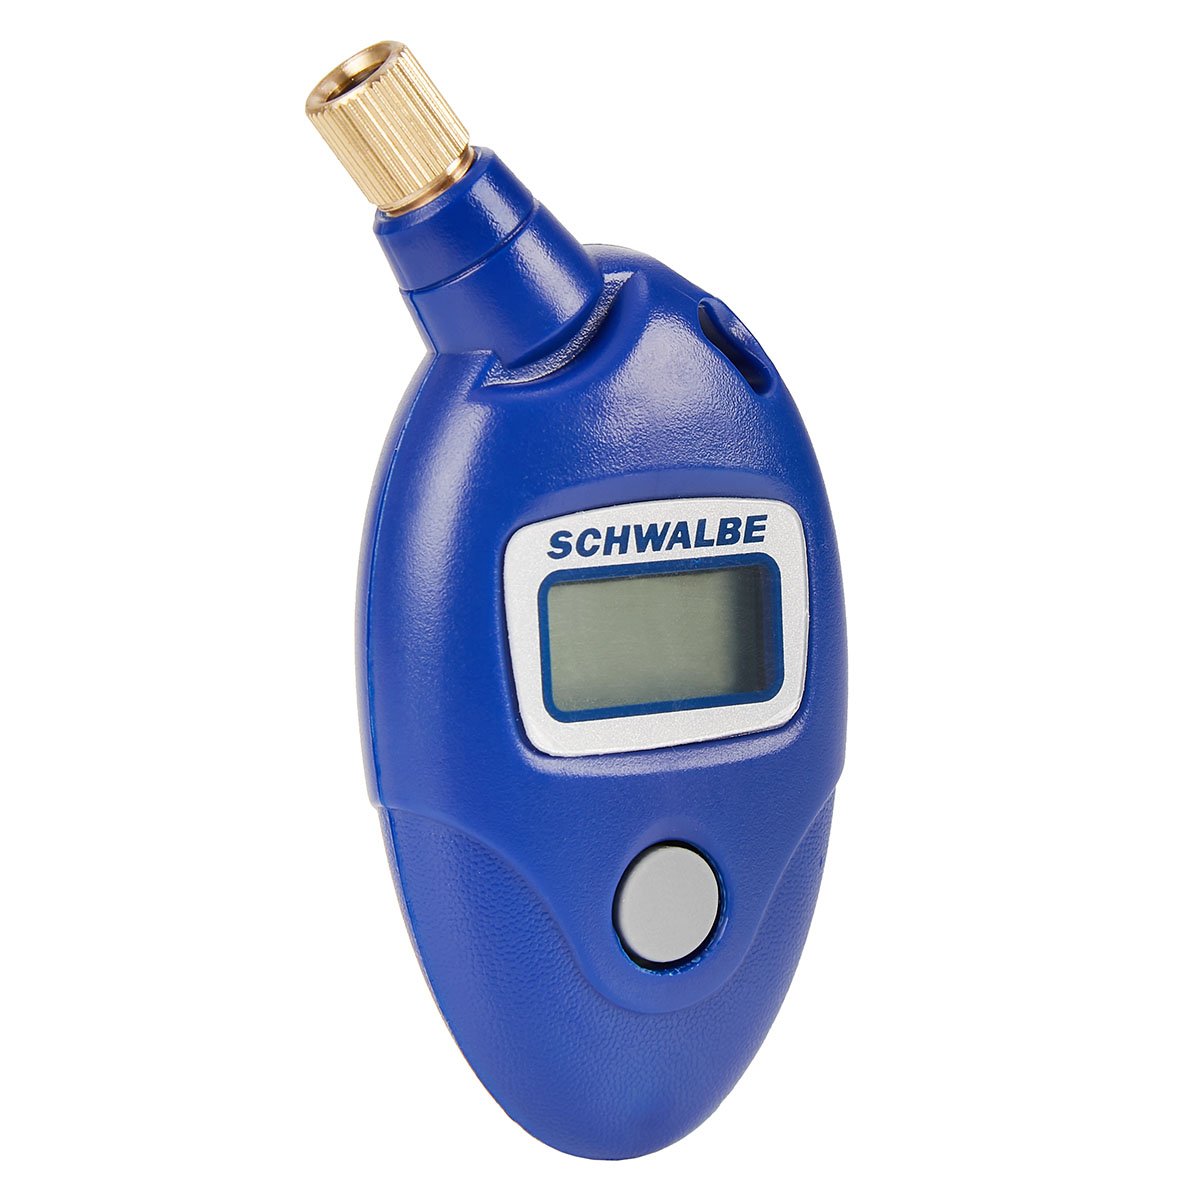 Schwalbe Manometro per la pressione dell'aria Airmax Pro Digitale, Presta/Schrader